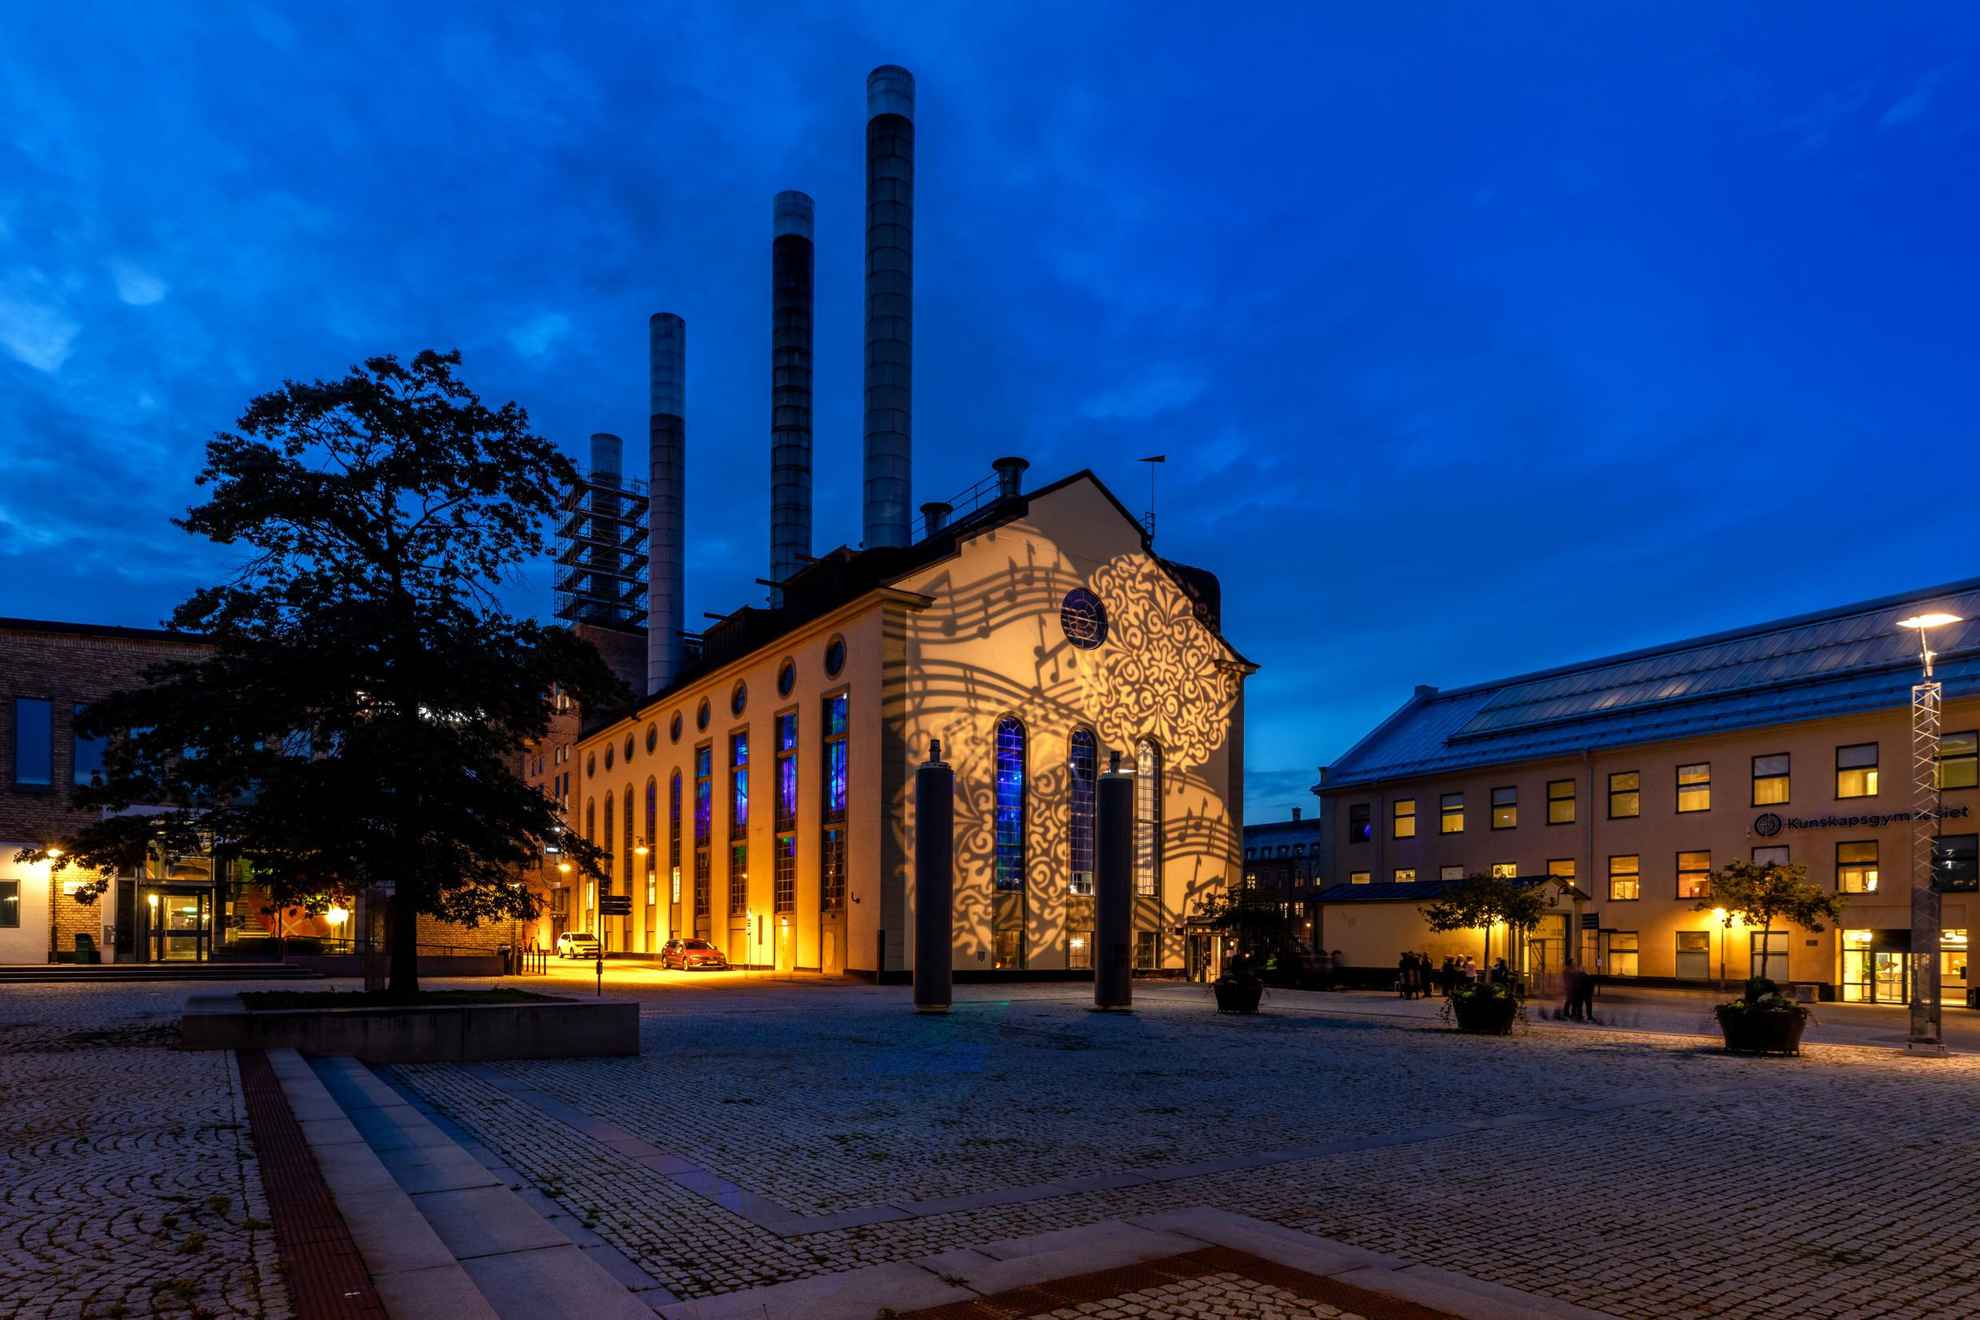 Een industrieel gebouw 's nachts verlicht door lichten die muzieknoten uitbeelden.